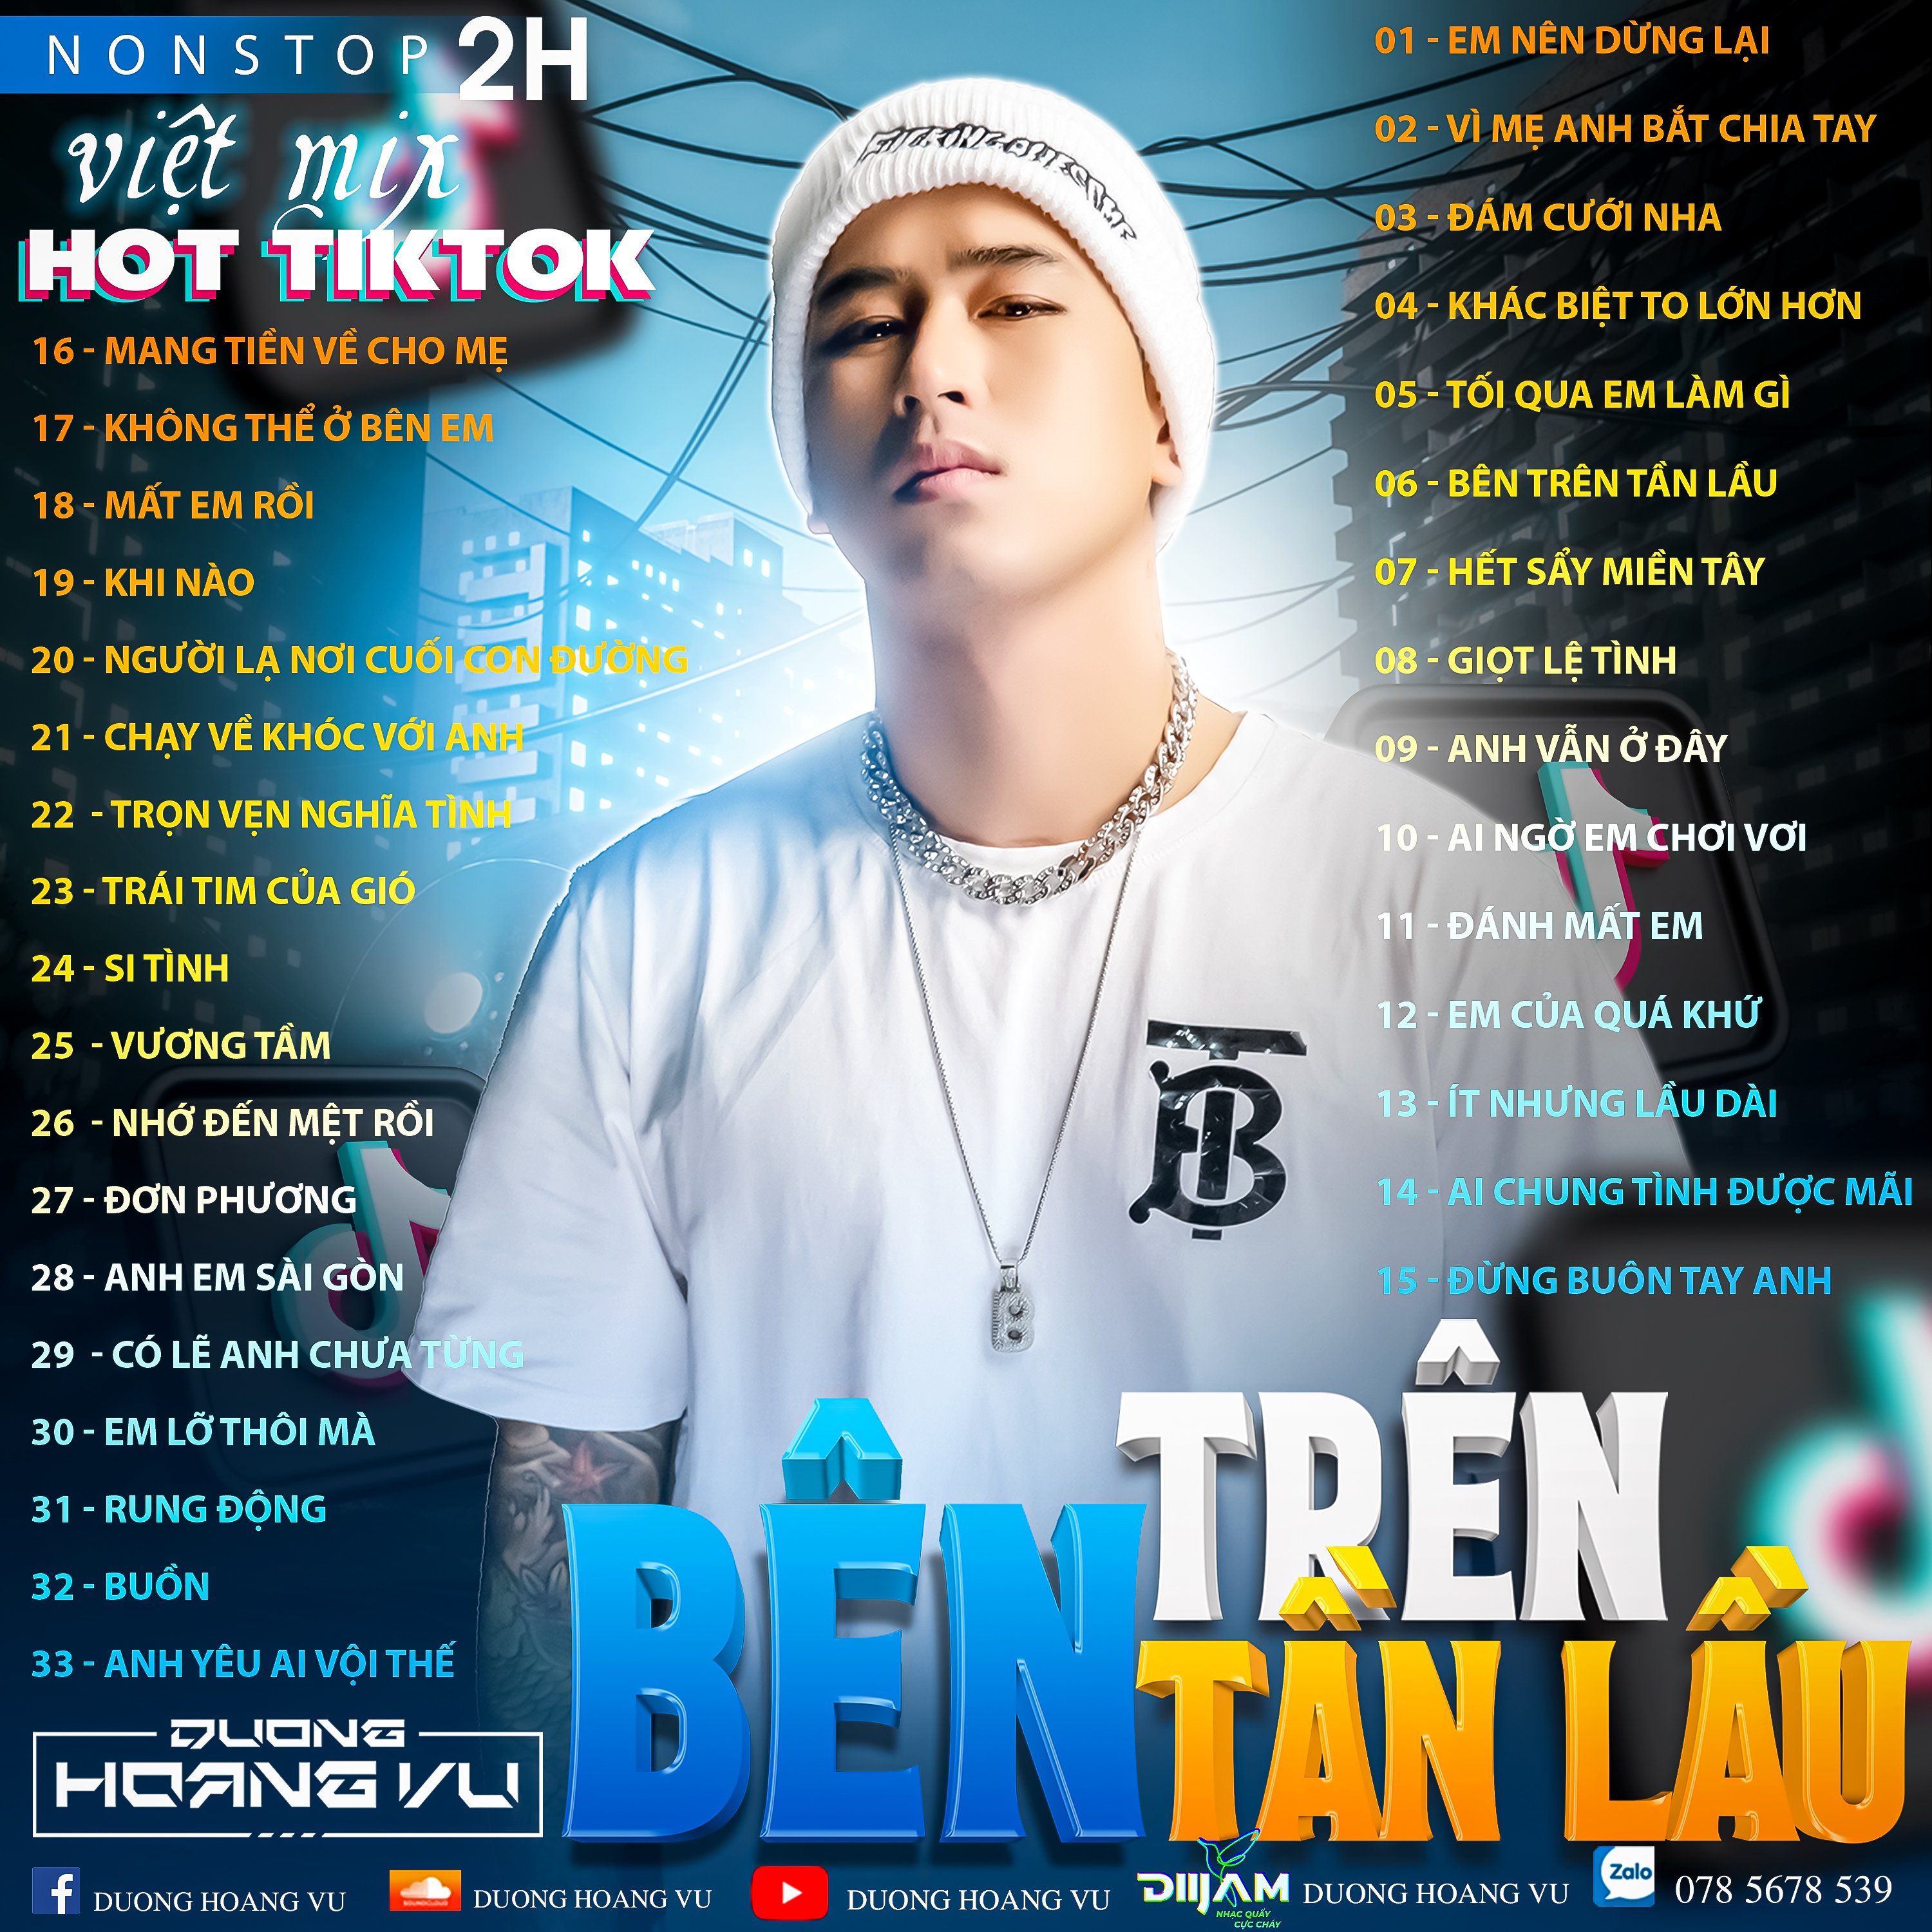 Изтегли (Demo ) Nst Việt Mix Hot tiktok 2h - 2022 - DJ Dương Hoàng Vũ Mix Mua Full IB Zalo 078.5678.539